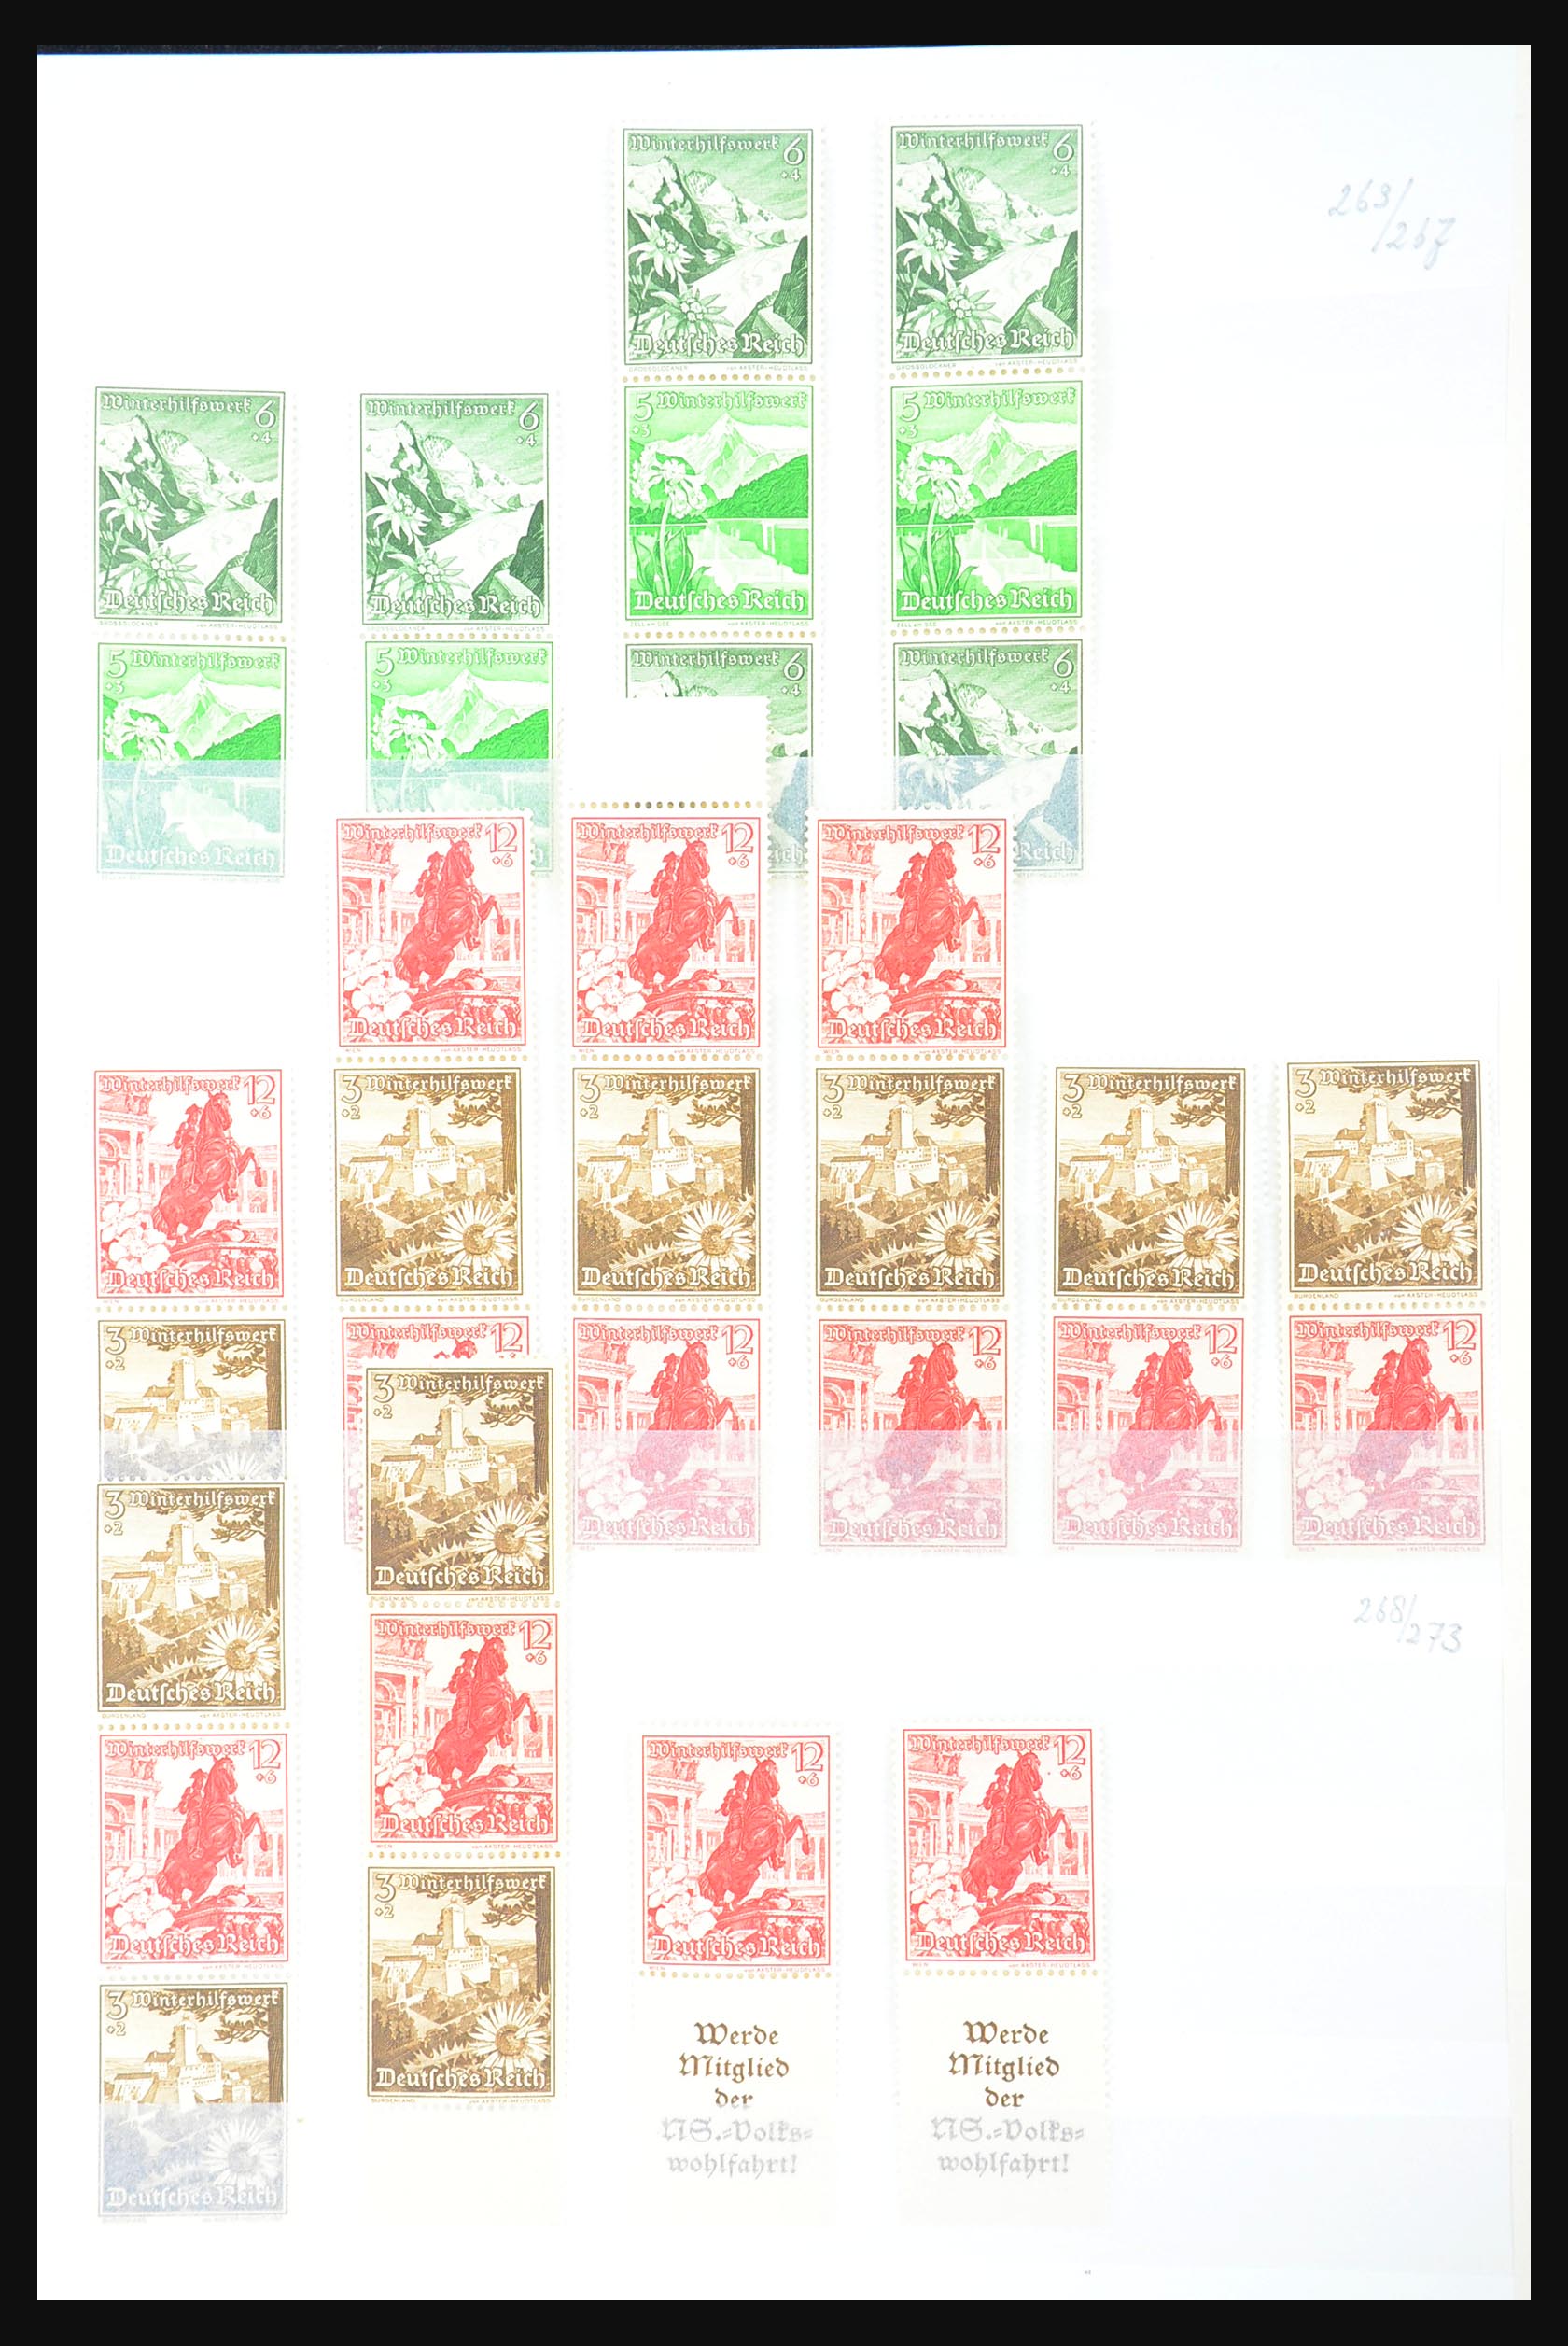 31391 031 - 31391 Duitse Rijk combinaties postfris 1913-1941.